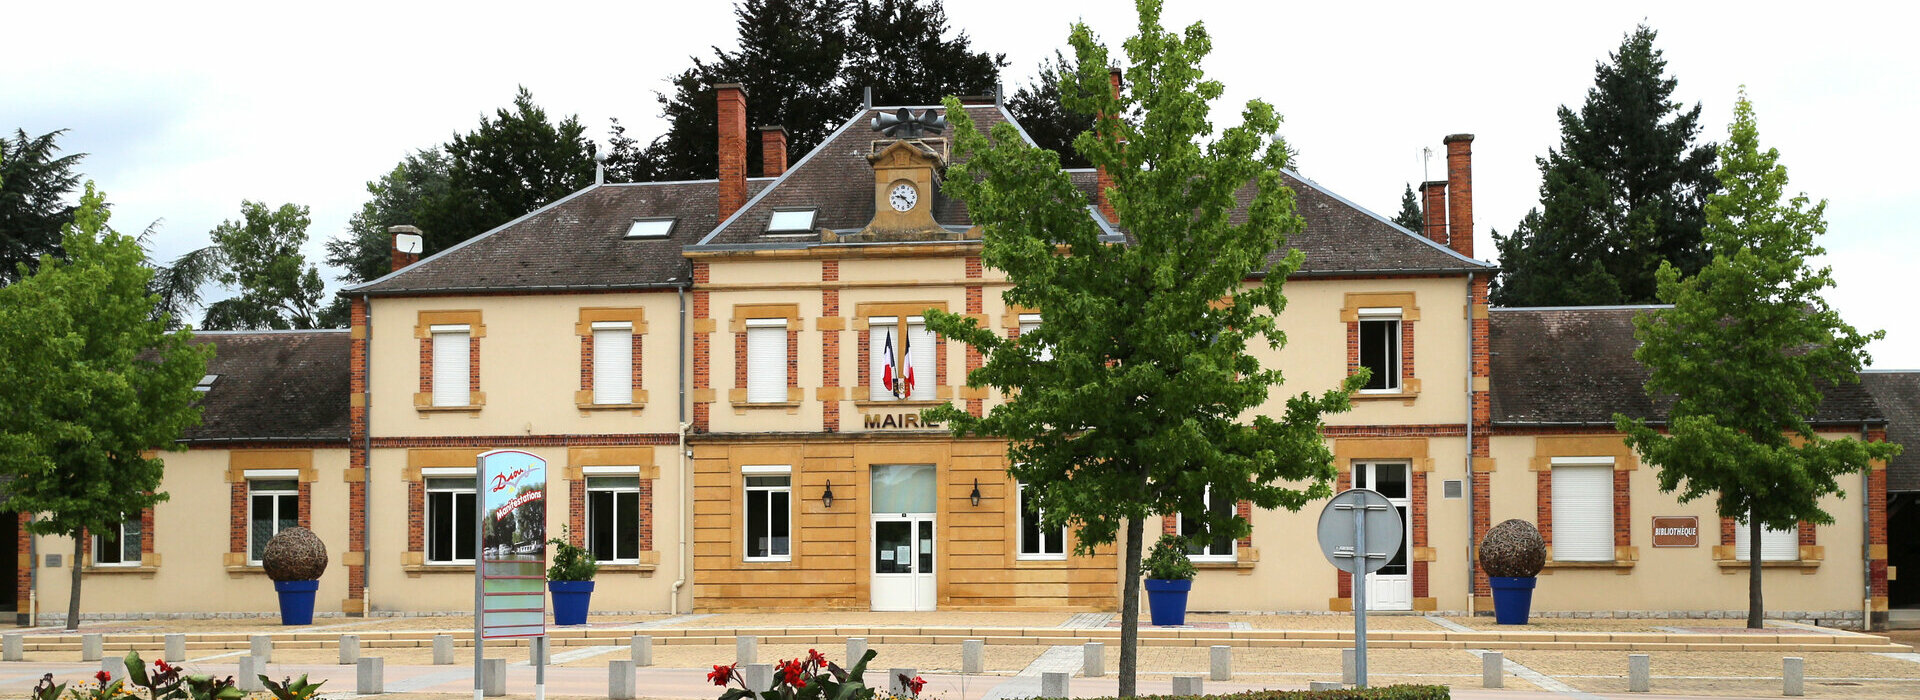 Mairie de Diou Allier